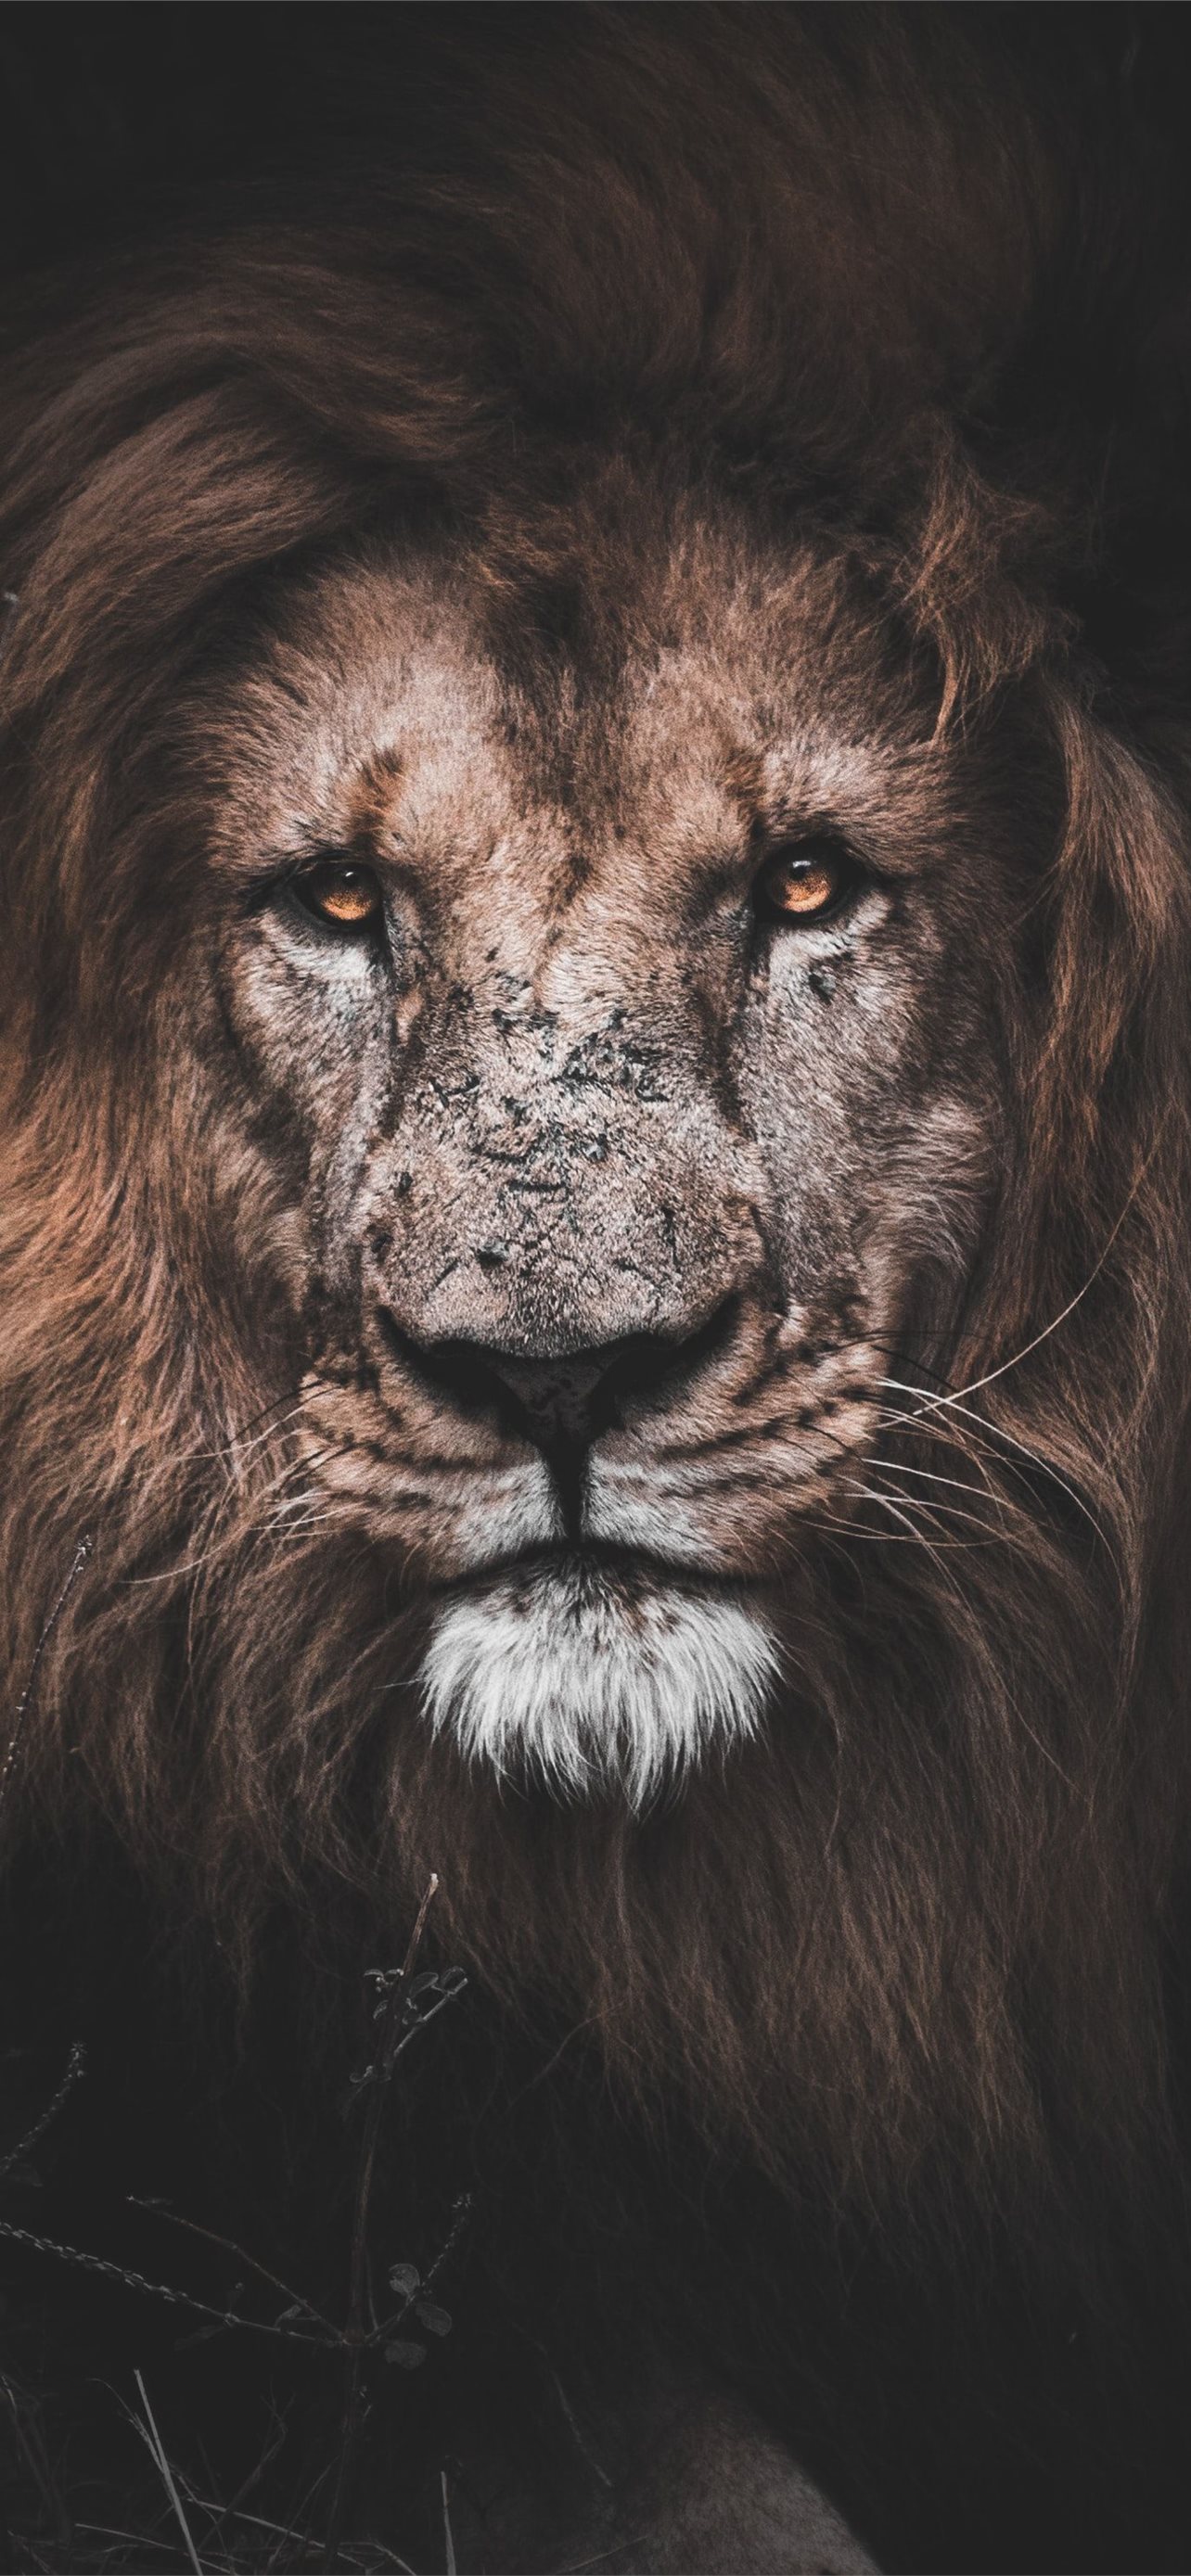 Best Lion iPhone HD Wallpapers sẽ mang đến cho bạn những hình nền sống động và đẹp mắt nhất về con sư tử. Bạn sẽ được tận hưởng vẻ đẹp hoang dã và sức mạnh của loài vật này thông qua những hình ảnh chất lượng HD.